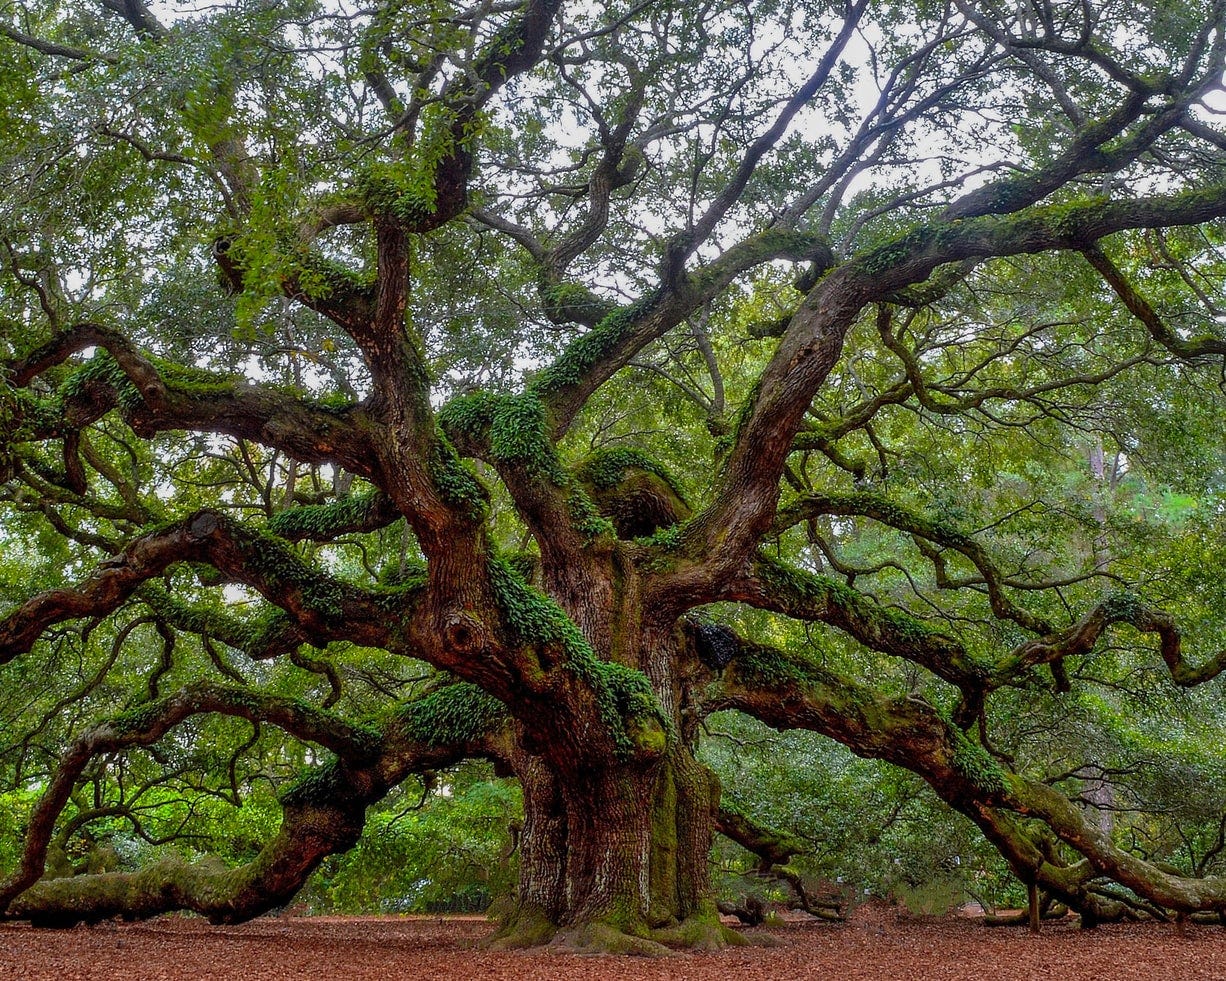 An old, giant oak tree